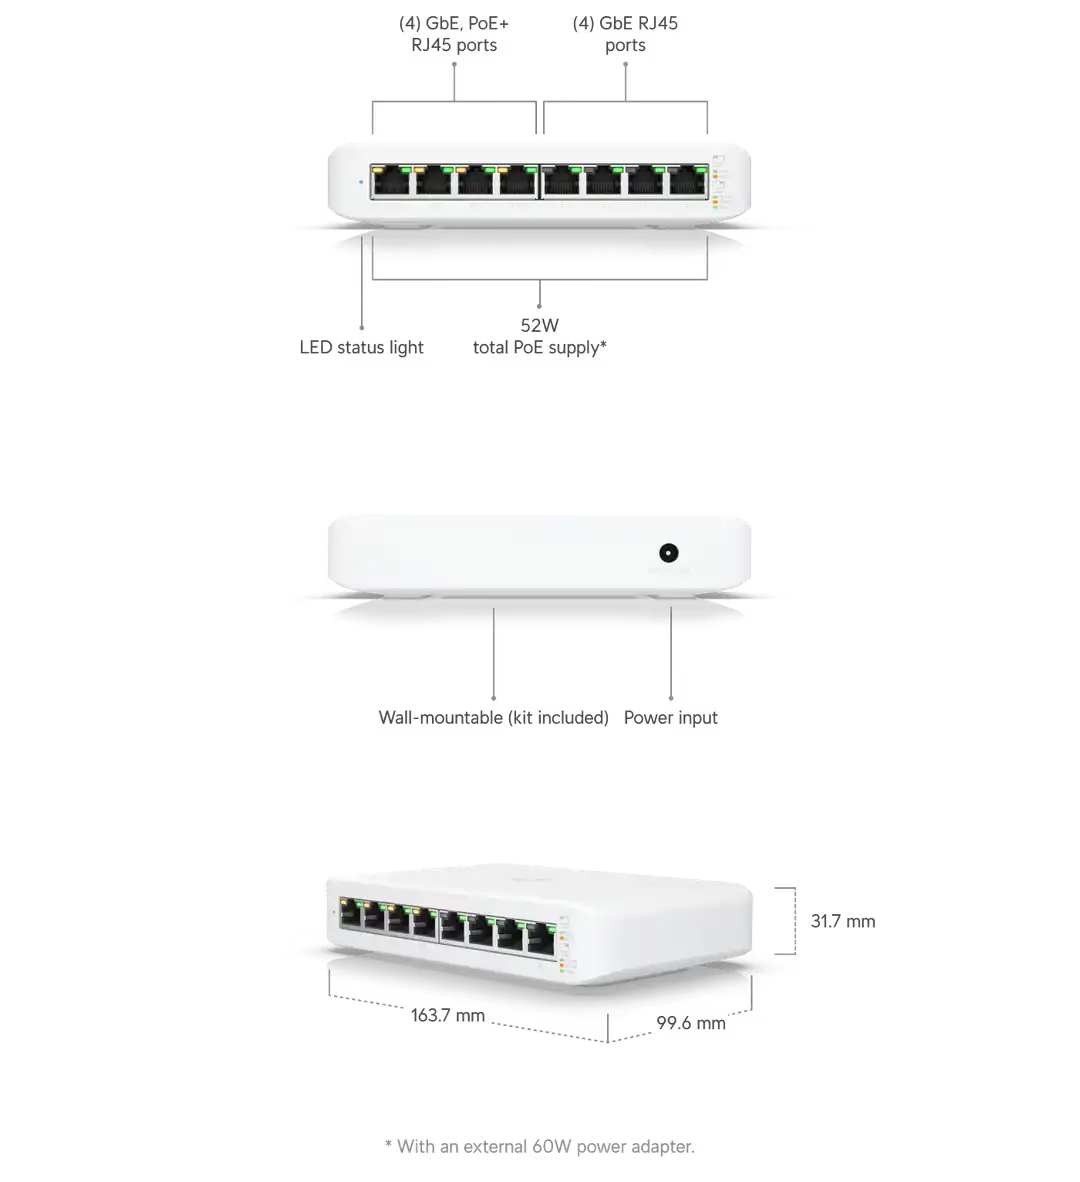 Commutateur UniFi Lite 8 PoE 8 ports Maroc Ubiquiti USW-Lite-8-PoE Maroc Switch 8ports Gigabit PoE+ Ubiquiti USW-Lite-8-PoE, Le contrôleur de réseau UniFi et l’application mobile permettent aux administrateurs de configurer et de surveiller pratiquement toutes les fonctionnalités du commutateur dans une interface utilisateur graphique 